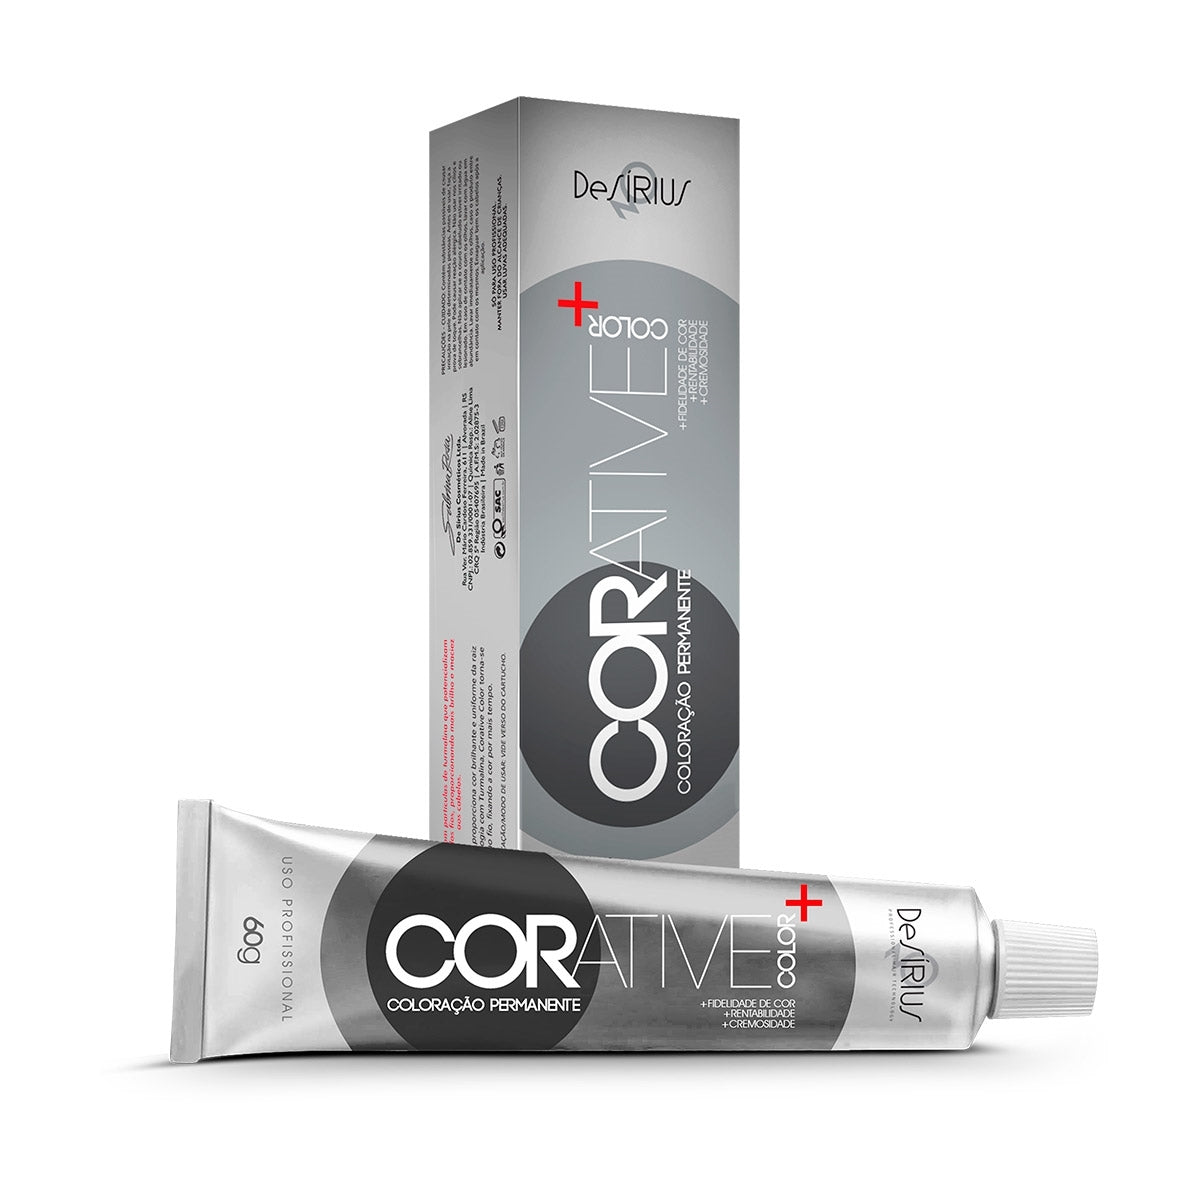 CORATIVE COLORATION - 3.0 DARK BROWN - 60G FS Cosmetics